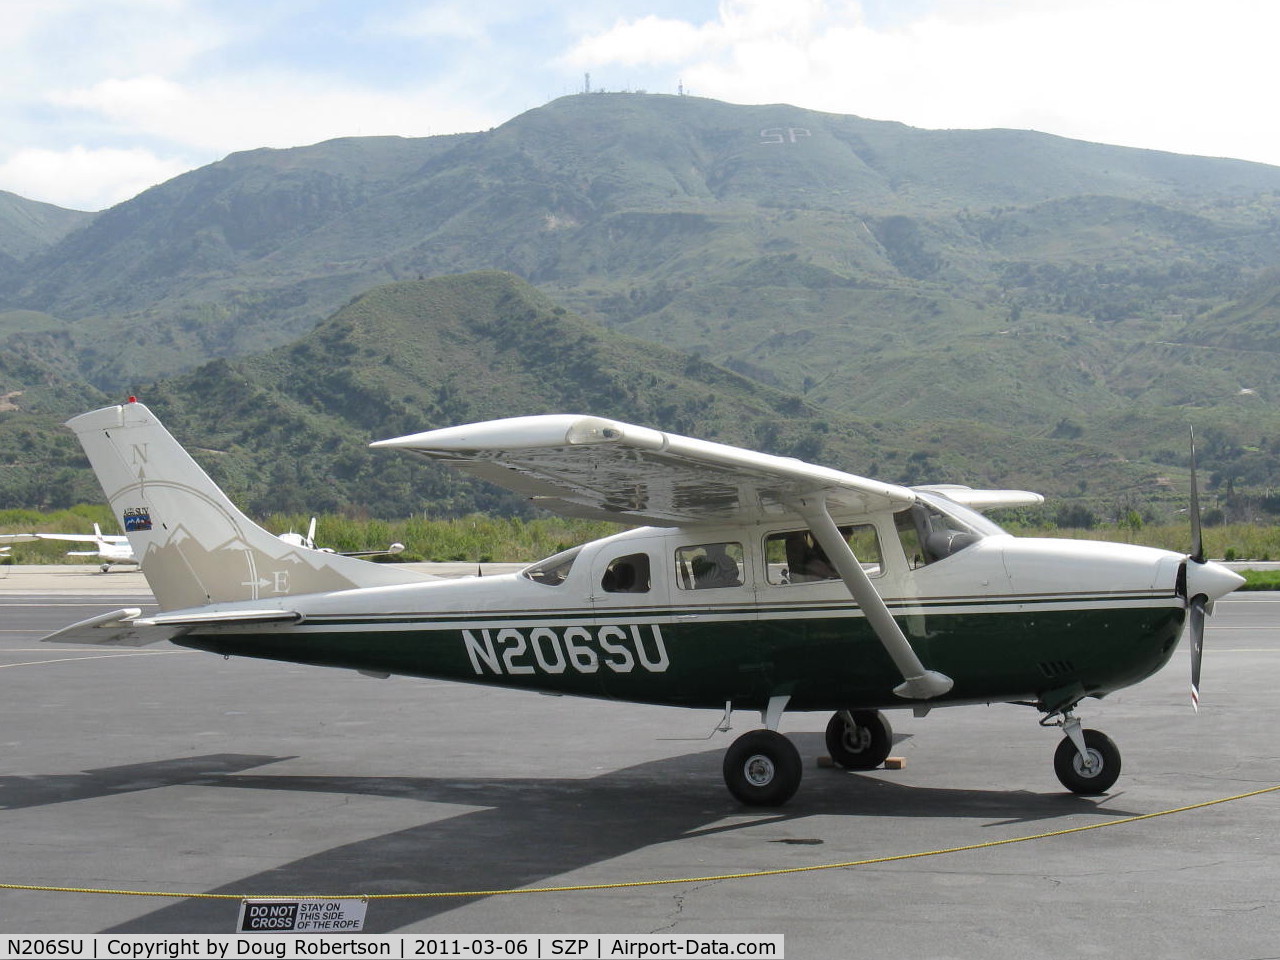 N206SU, 1976 Cessna U206F Stationair C/N U20603184, 1976 Cessna U206F STATIONAIR, Continental IO-520-F 300/285 Hp, refueling